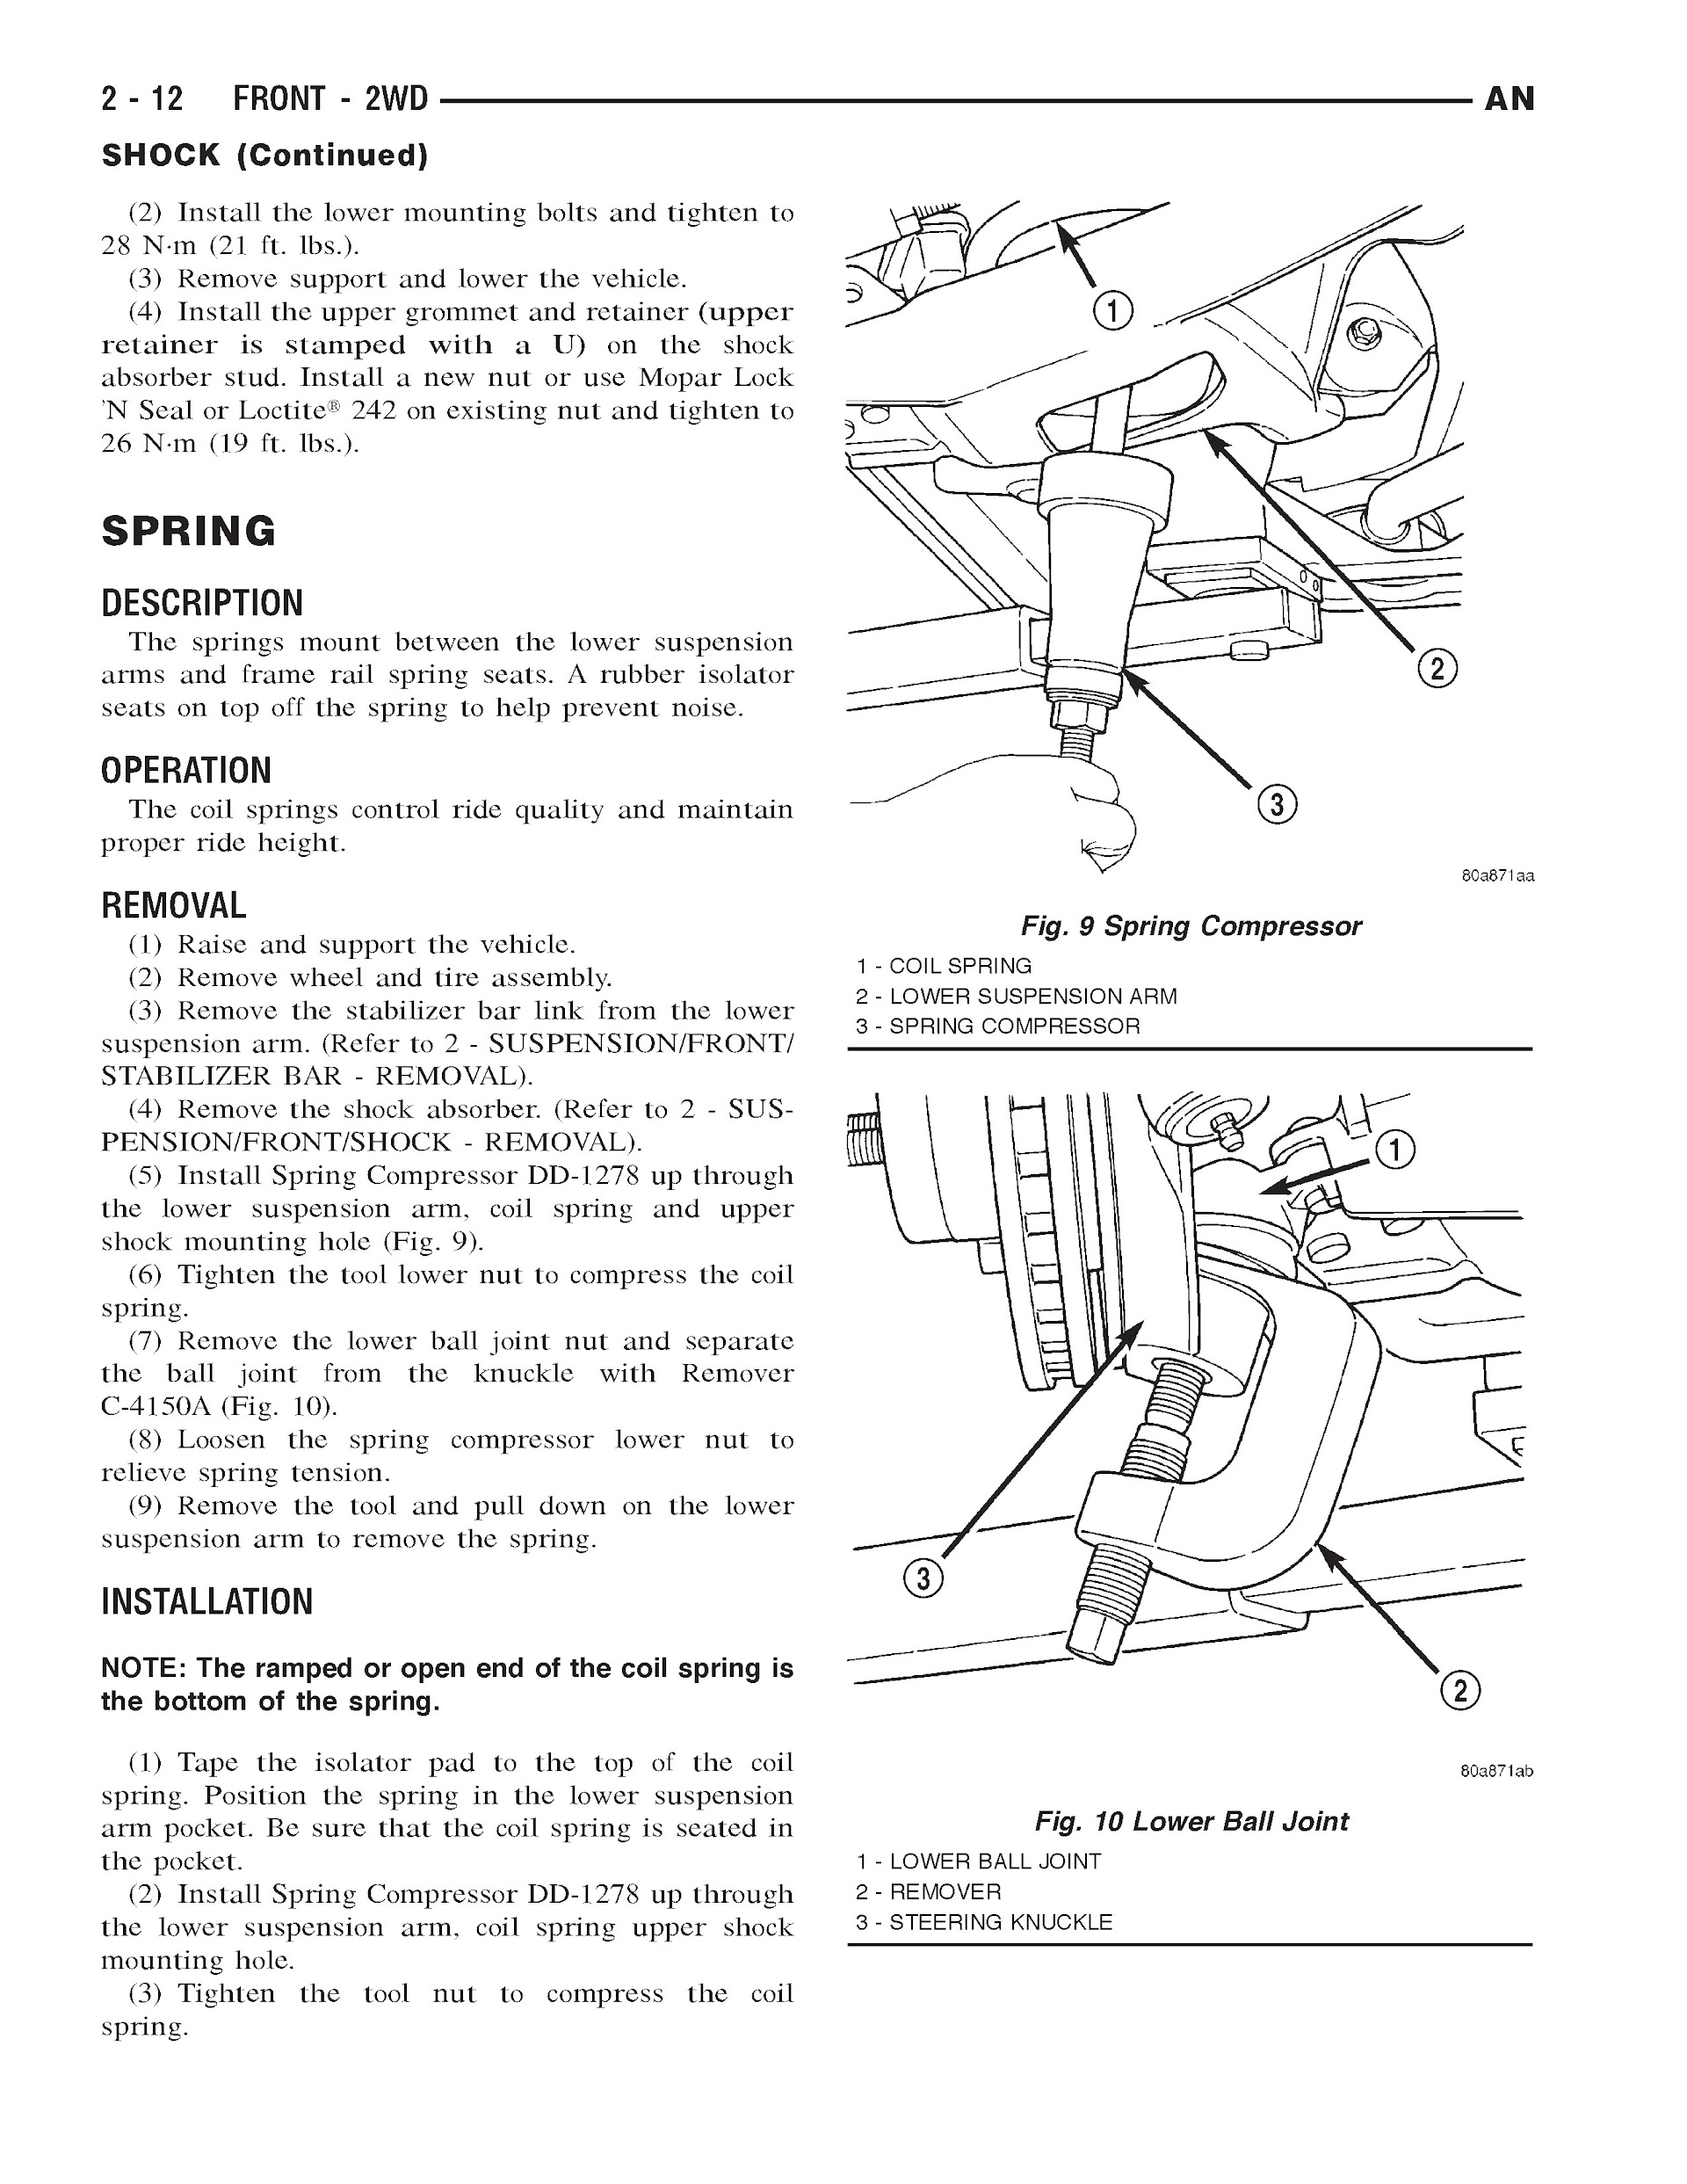 Download 2001-2003 Dodge Dakota Repair Manual